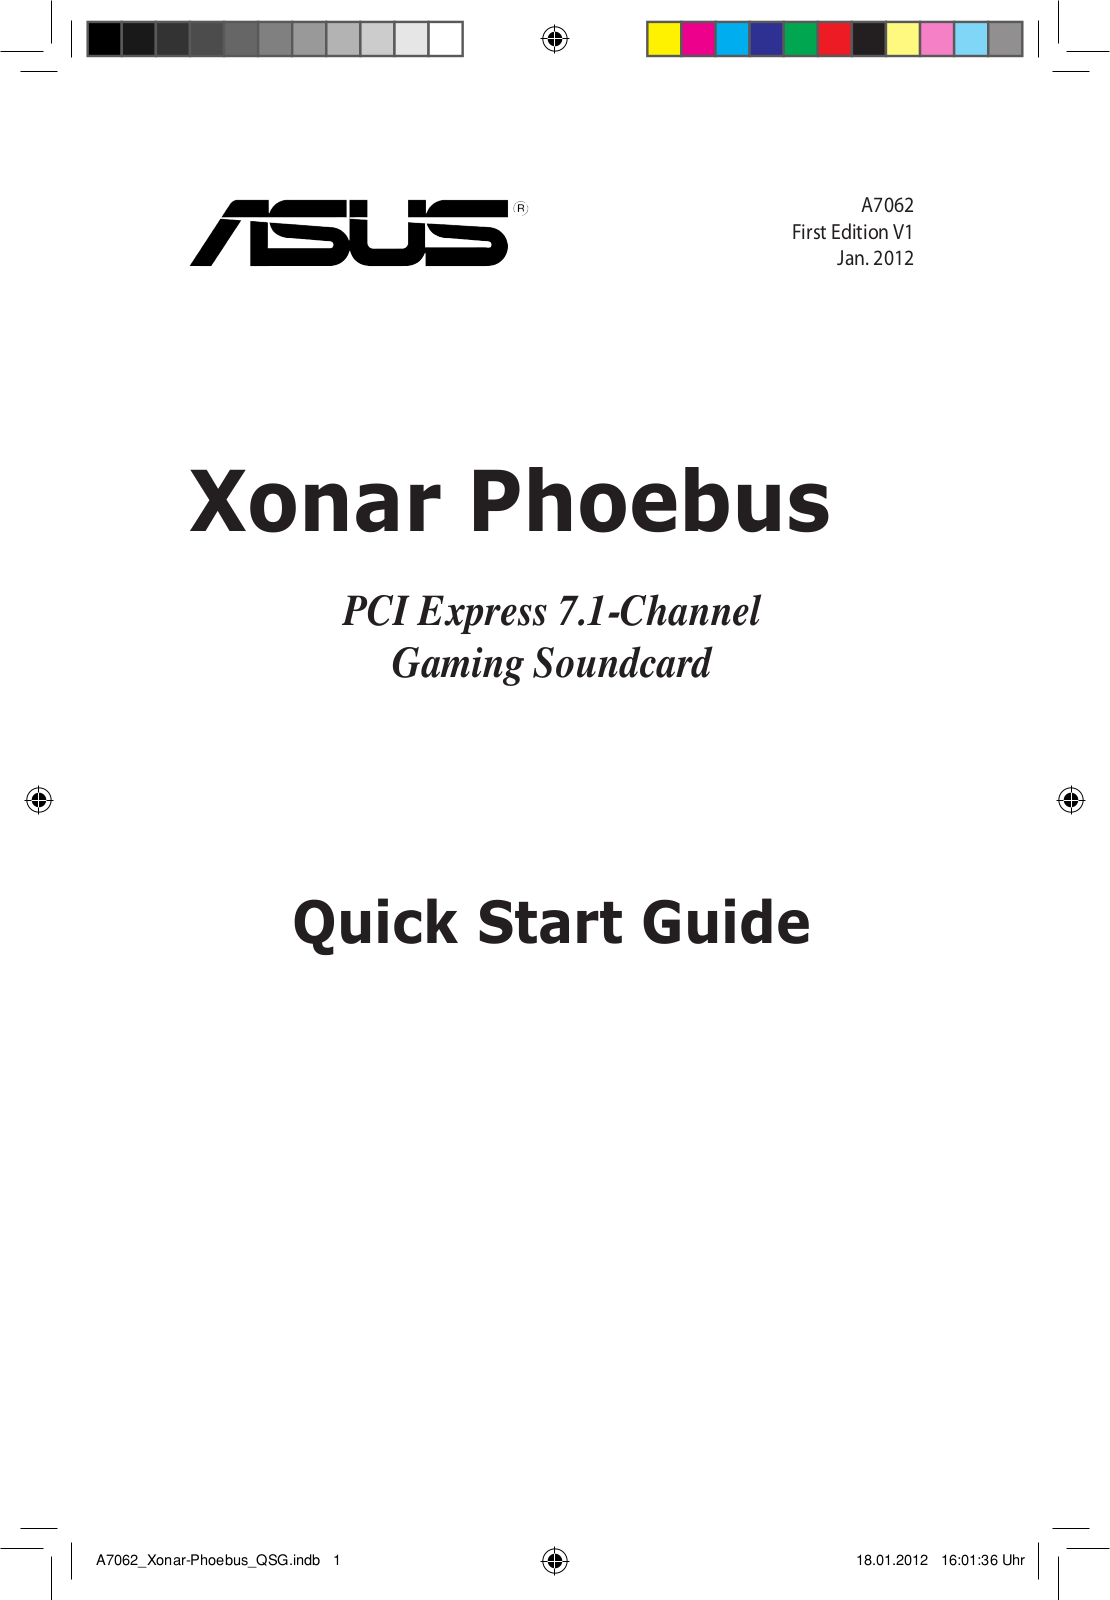 Asus Xonar Phoebus Solo, Xonar Phoebus Quick Start Guide